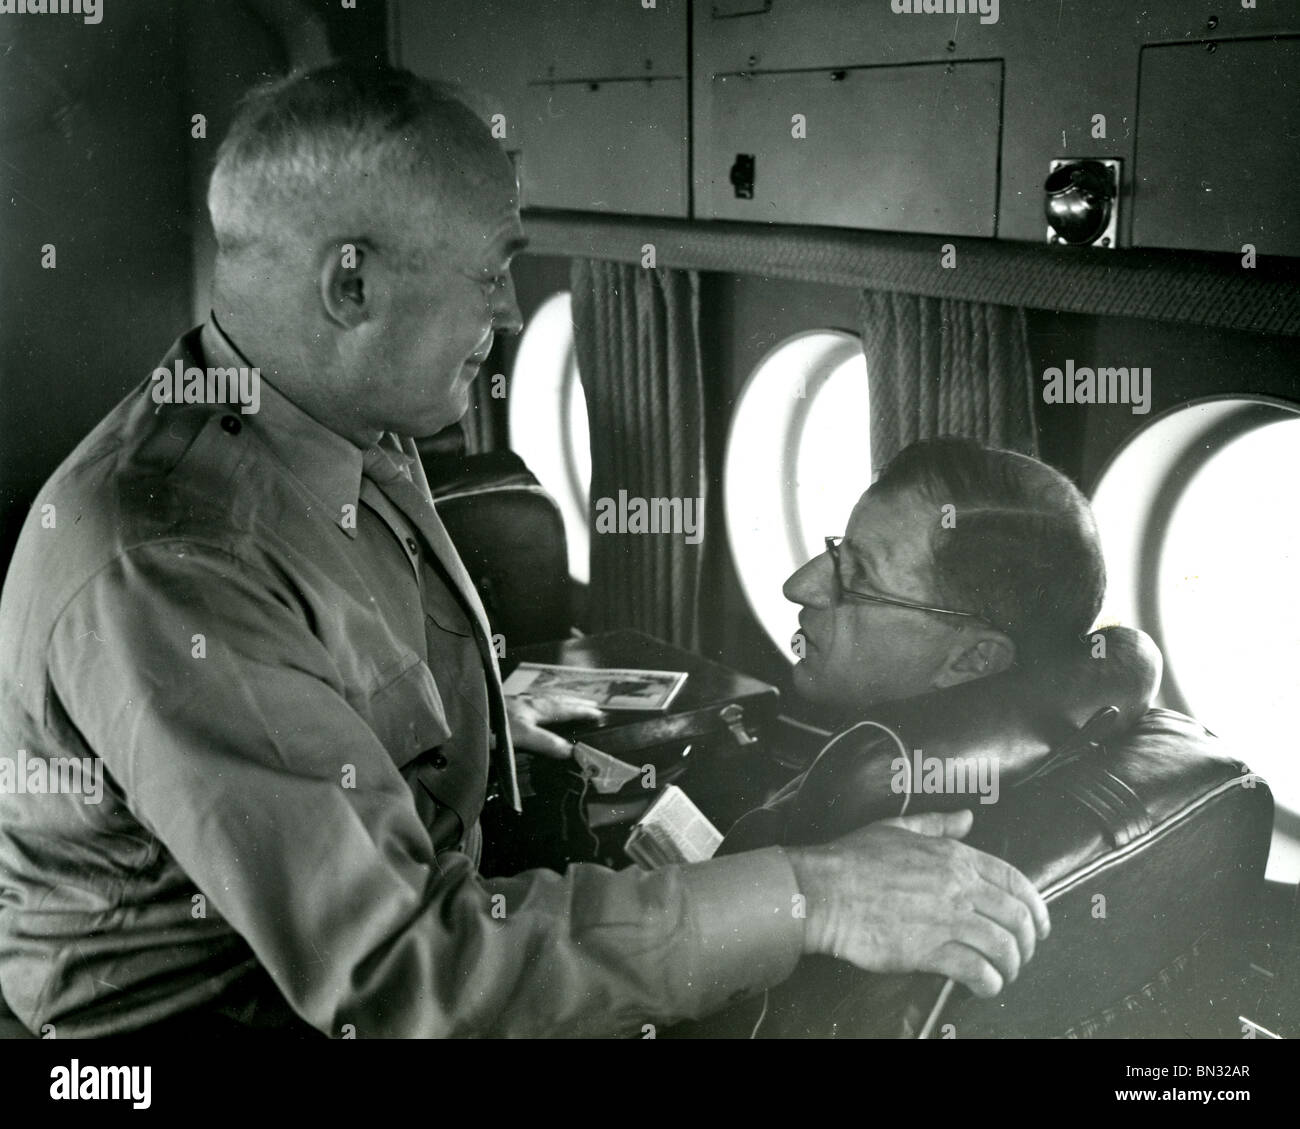 SIR CHARLES PORTAL maresciallo della RAF chat per noi officer durante il volo alla Conferenza di Yalta, febbraio 1945. Foto di Gale Lewis Foto Stock